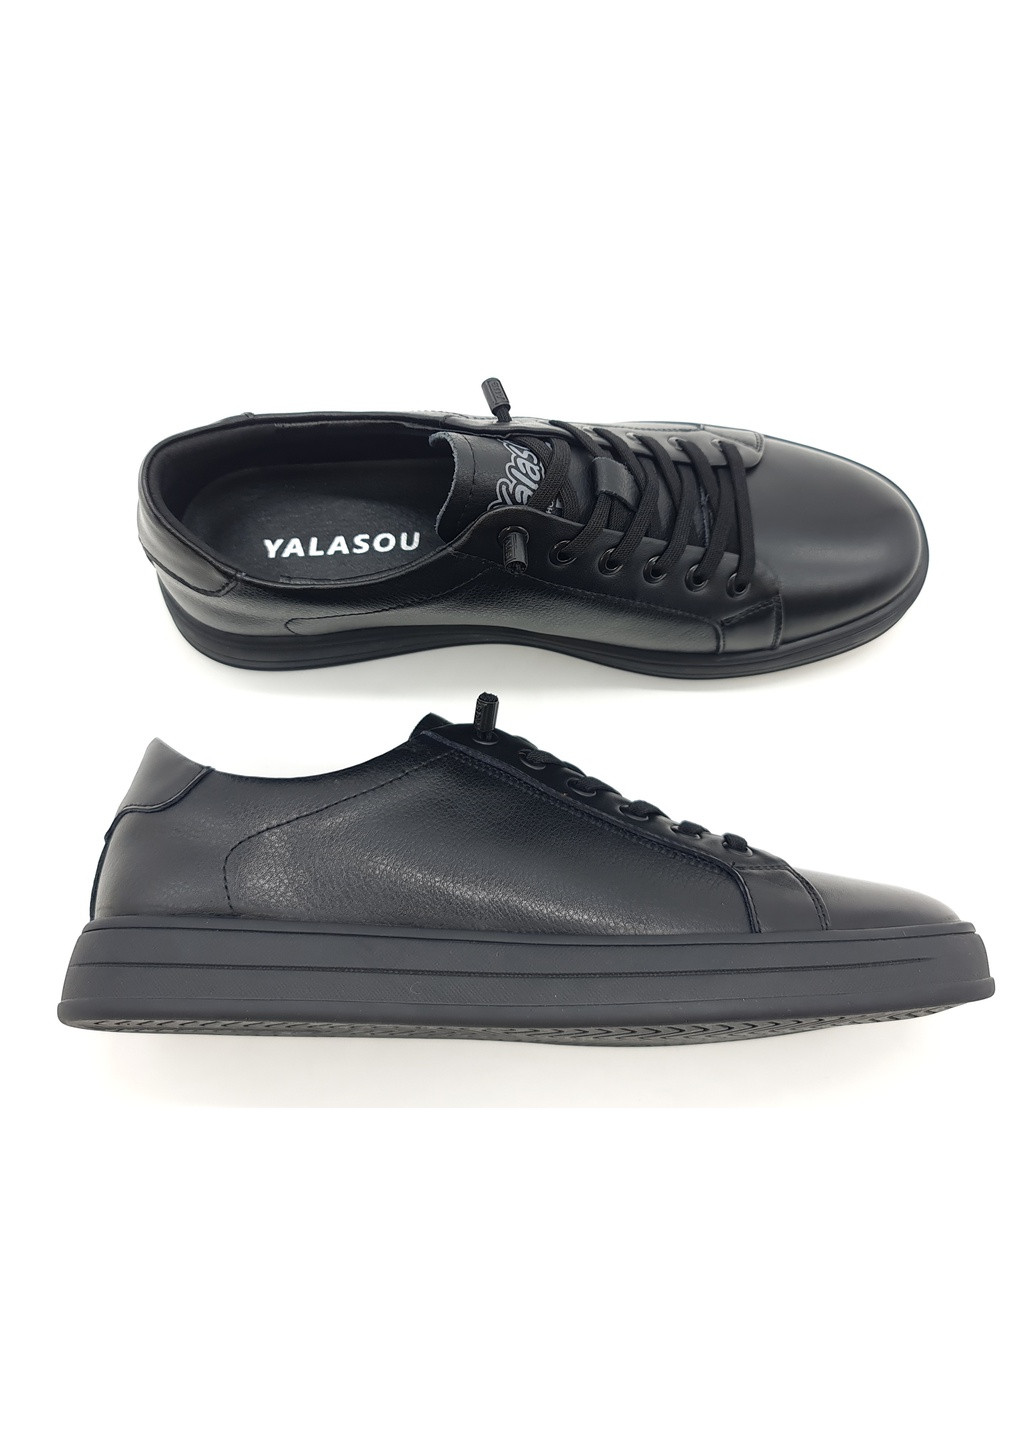 Черные мужские кеды черные кожаные ya-11-1 27,5 см (р) Yalasou